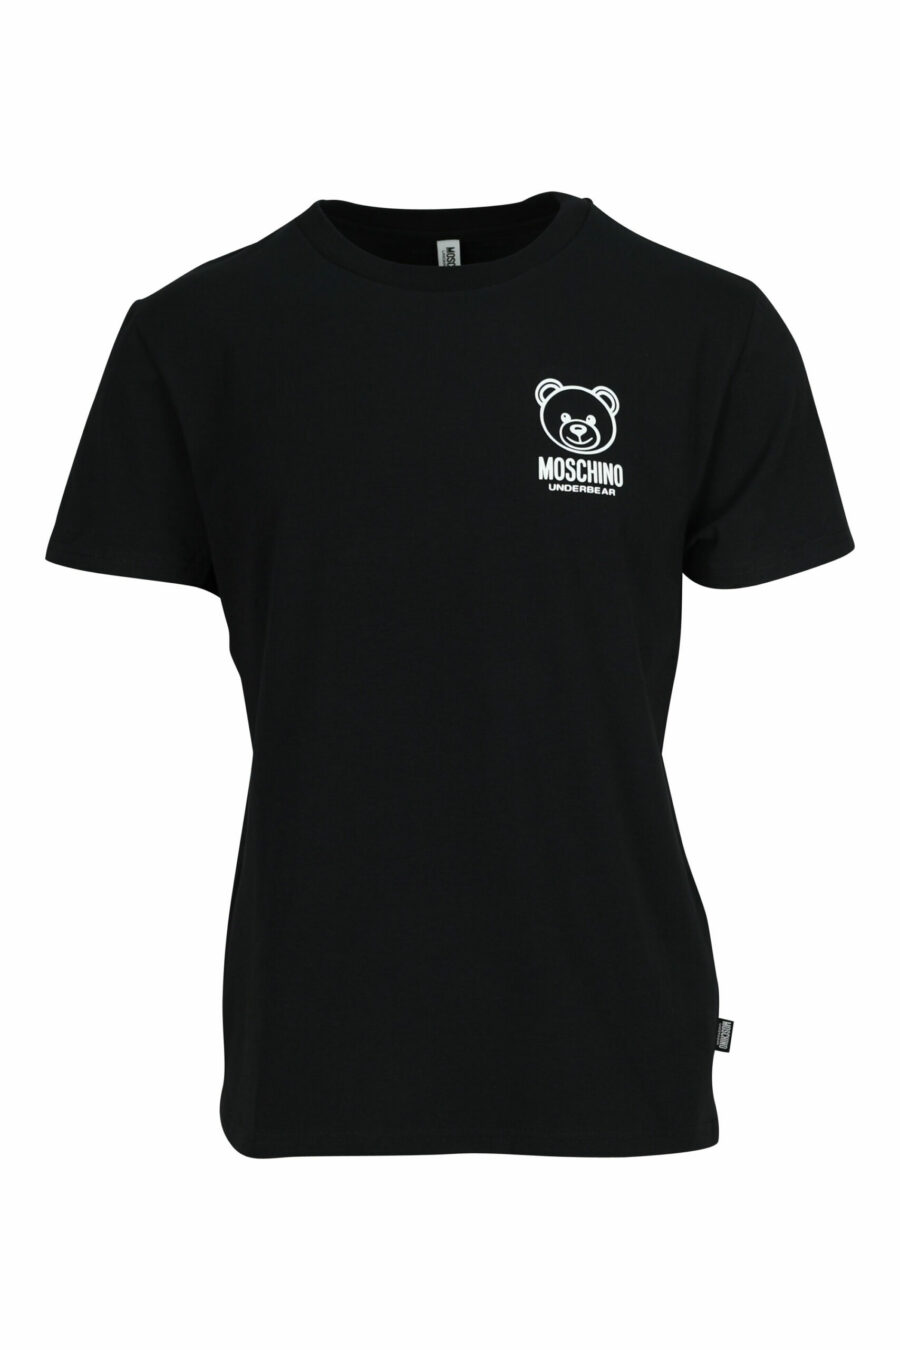 T-shirt noir avec minilogo d'ours caoutchouté blanc "underbear" - 667113602639 scaled